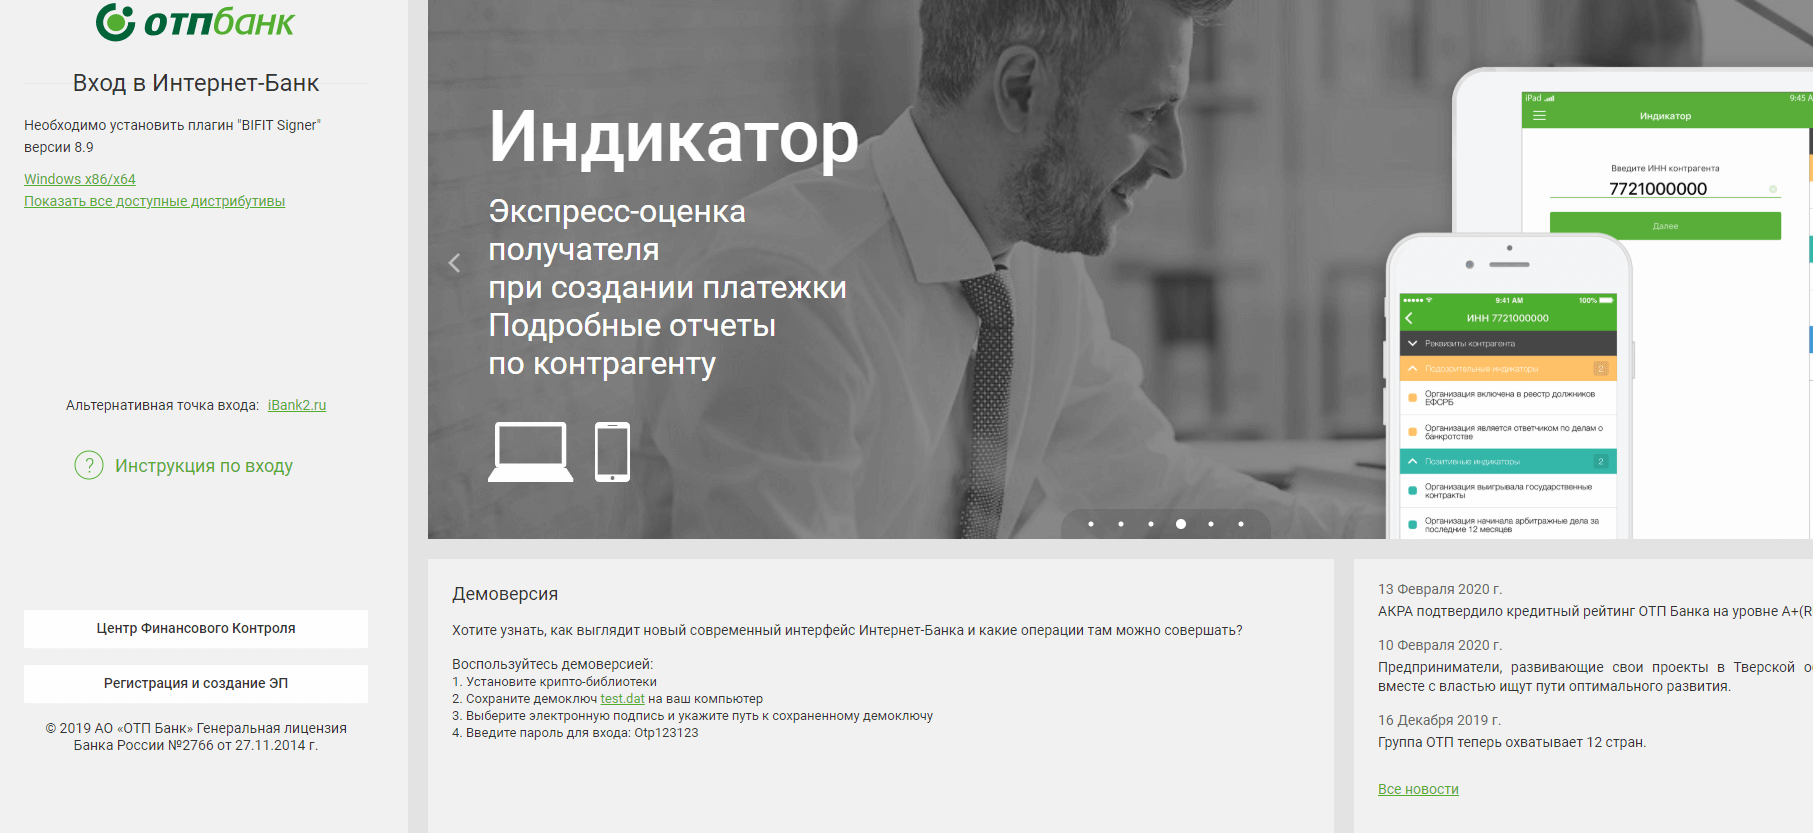 R otpbank ru. Интернет банк ОТП банк. Личный кабинет ОТП банка. Интерфейс ОТП банка. ОТП банк приложение.